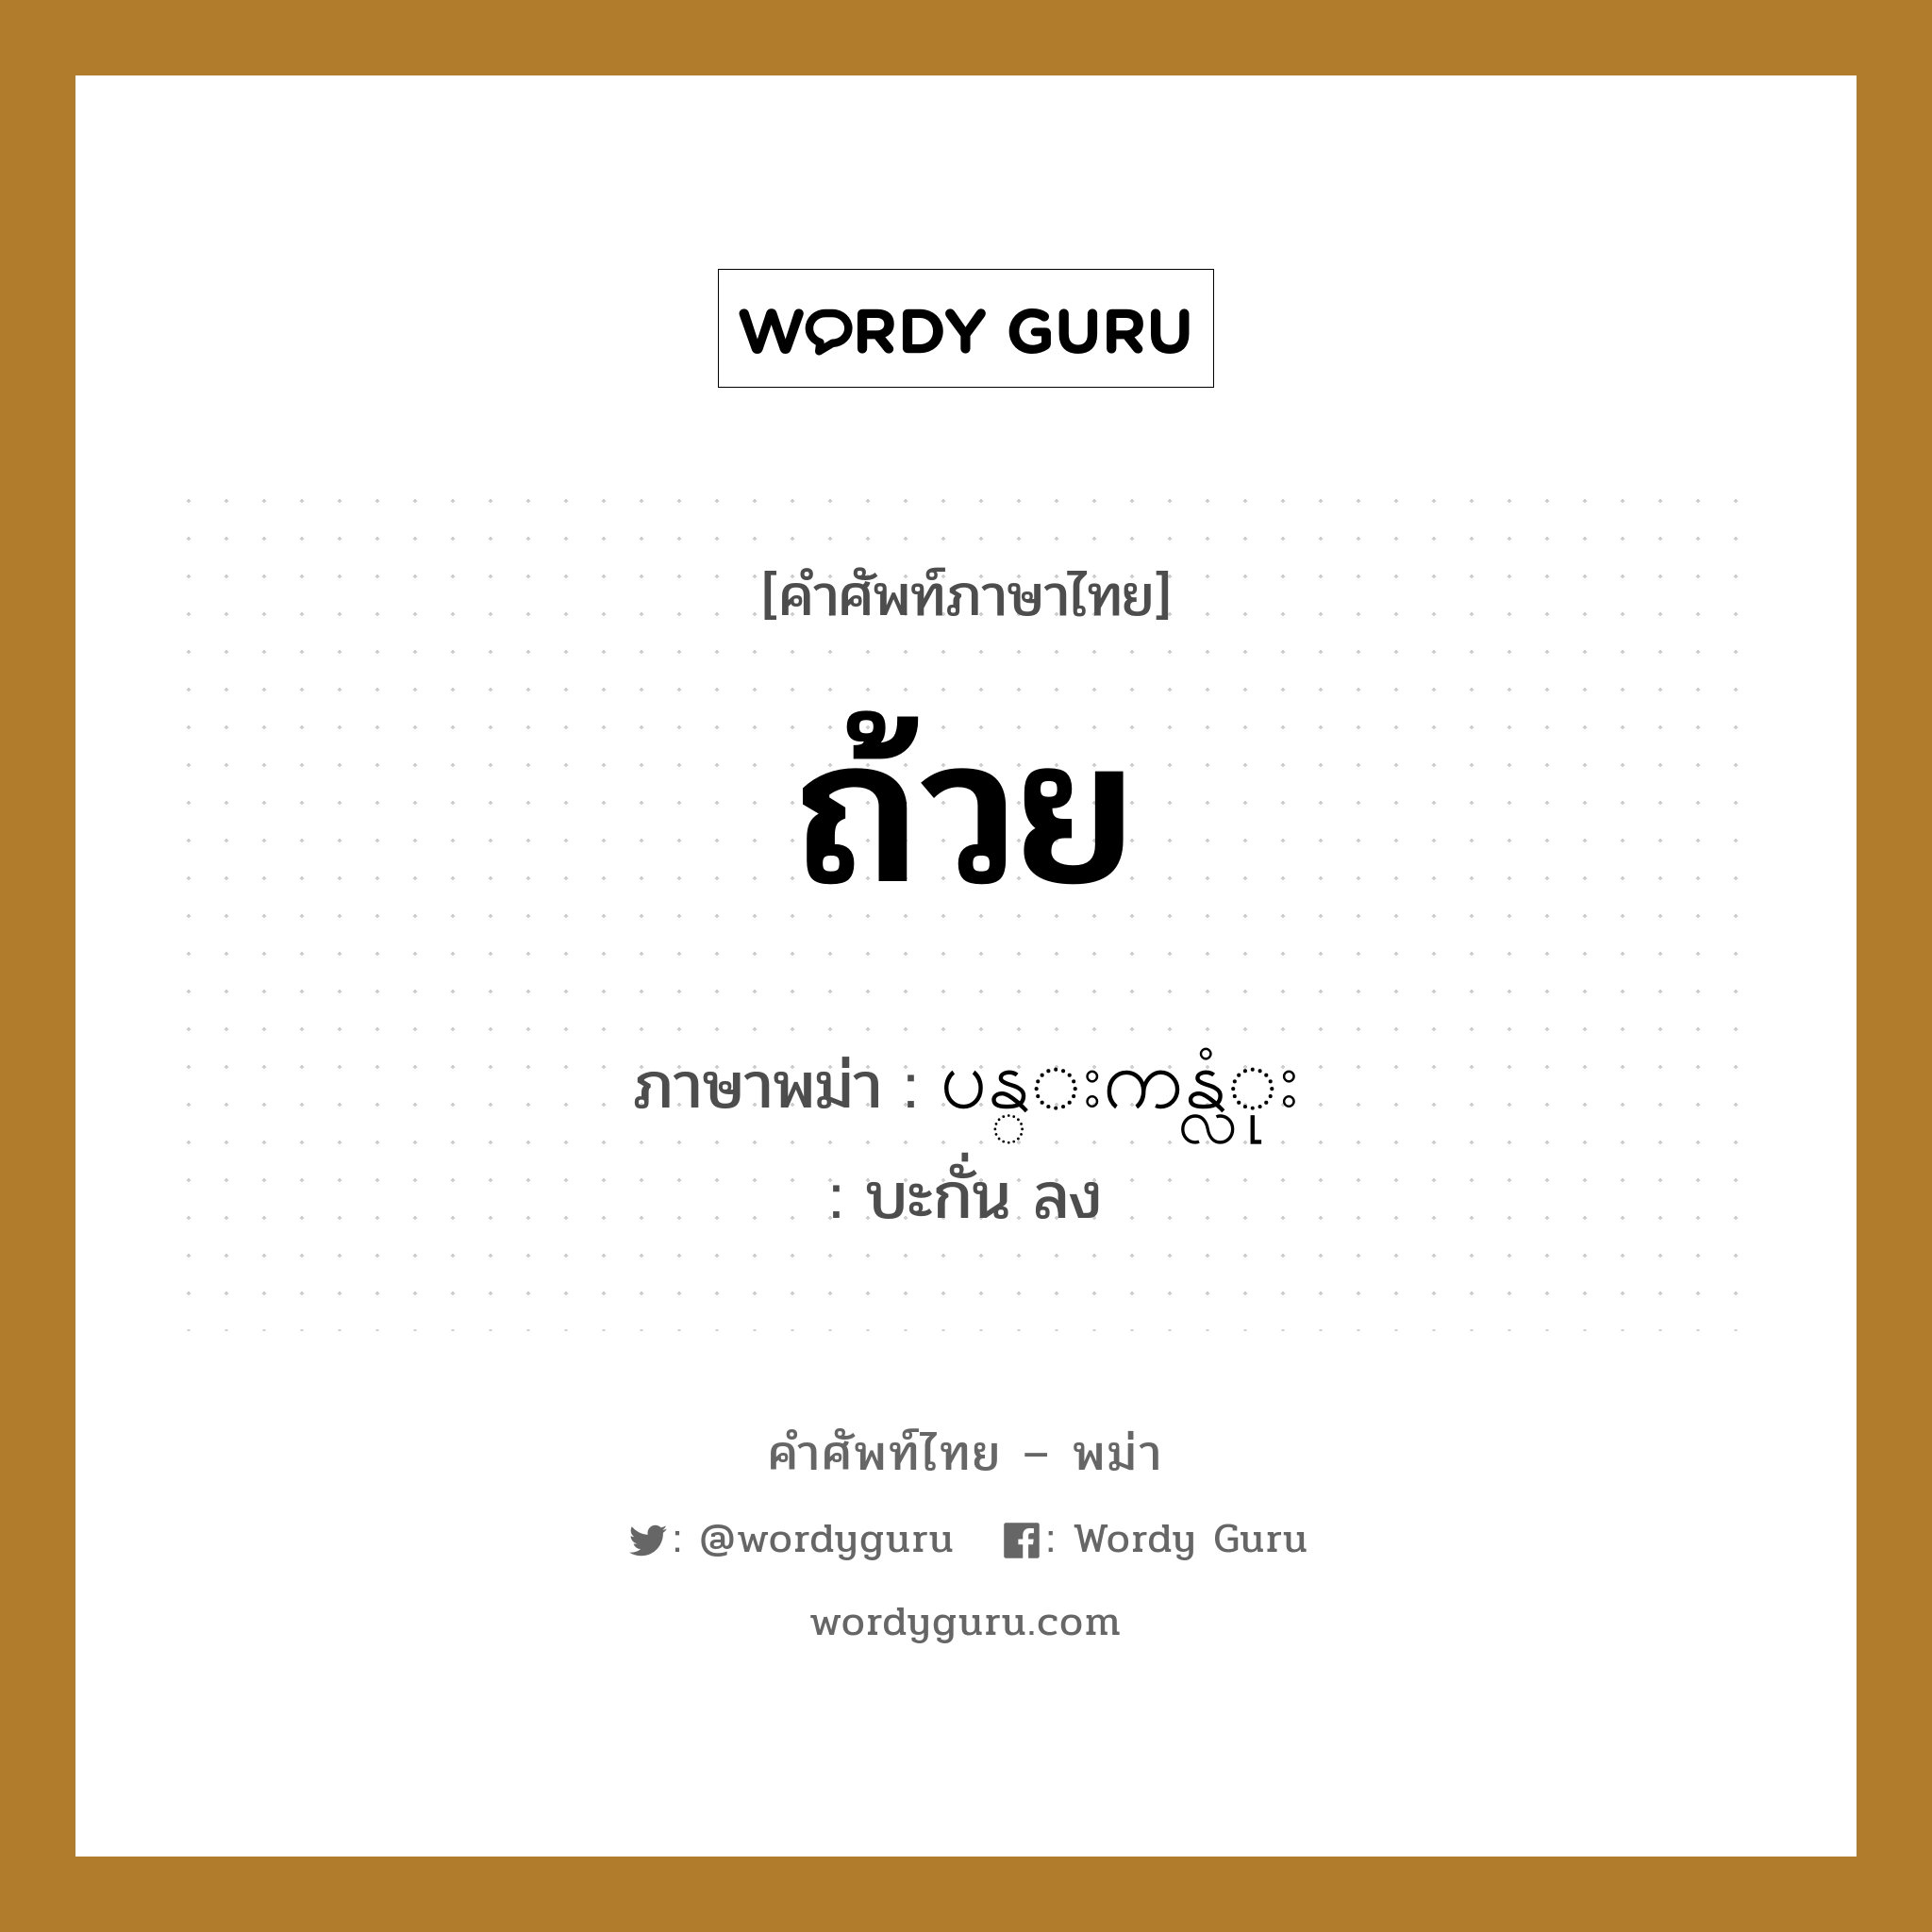 ถ้วย ภาษาพม่าคืออะไร, คำศัพท์ภาษาไทย - พม่า ถ้วย ภาษาพม่า ပန္းကန္လံုး หมวด หมวดของใช้ในครัว บะกั่น ลง หมวด หมวดของใช้ในครัว